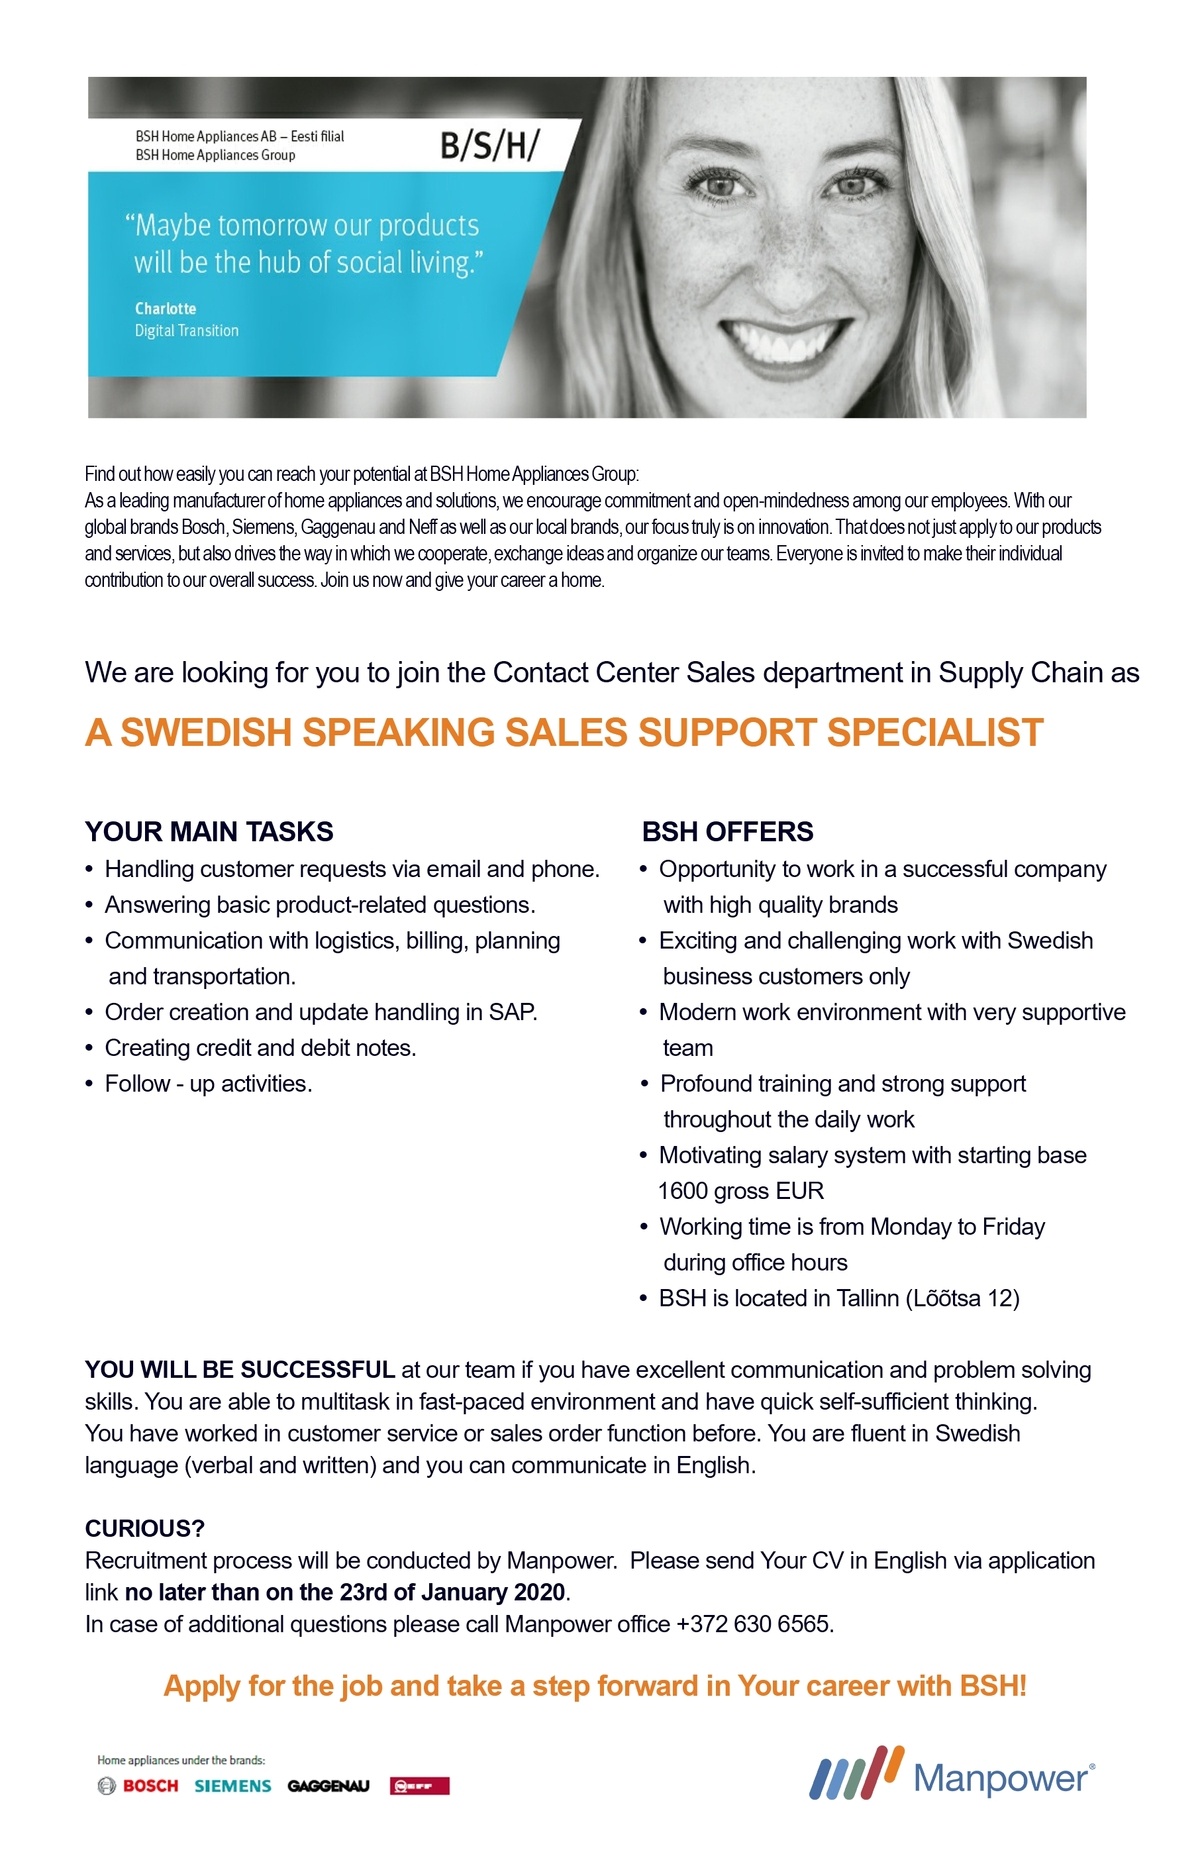 Manpower OÜ Swedish speaking sales support specialist 